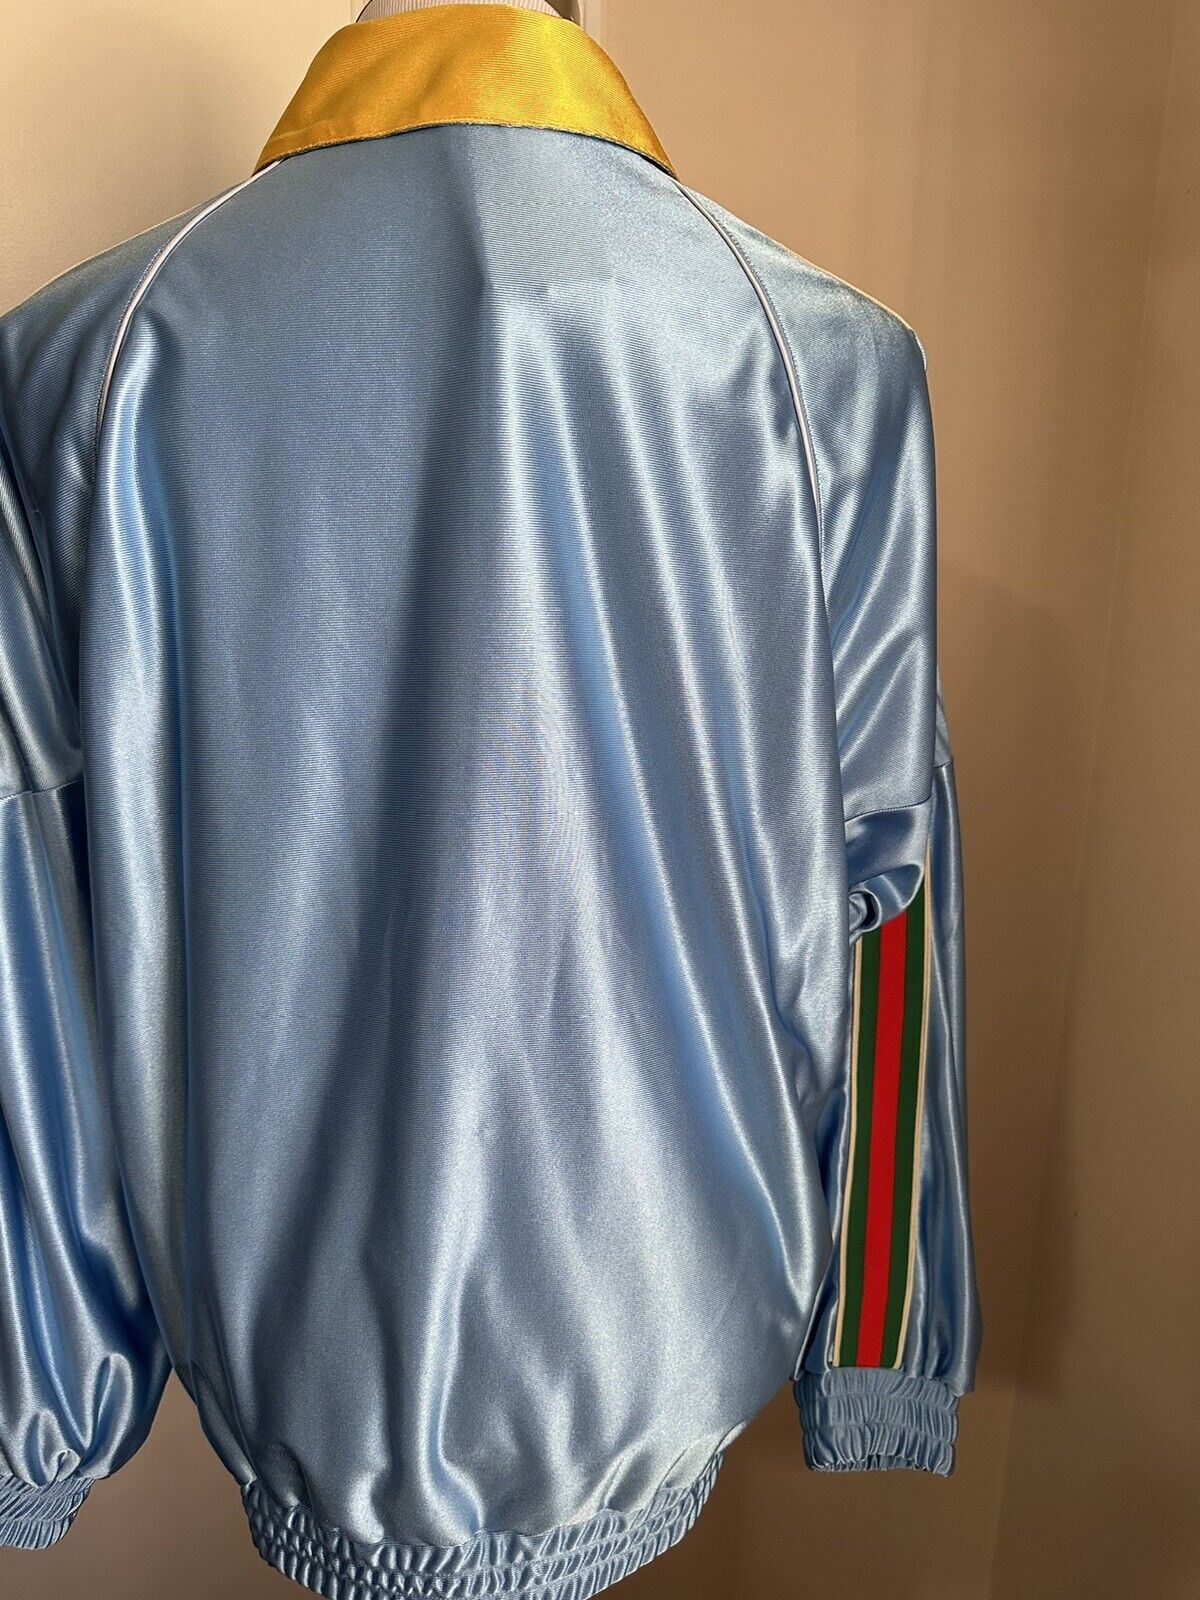 Neu mit Etikett: 1.650 $ Gucci Herren-Trainingsjacke aus technischem Polyester in Übergröße, leuchtendes Blau S